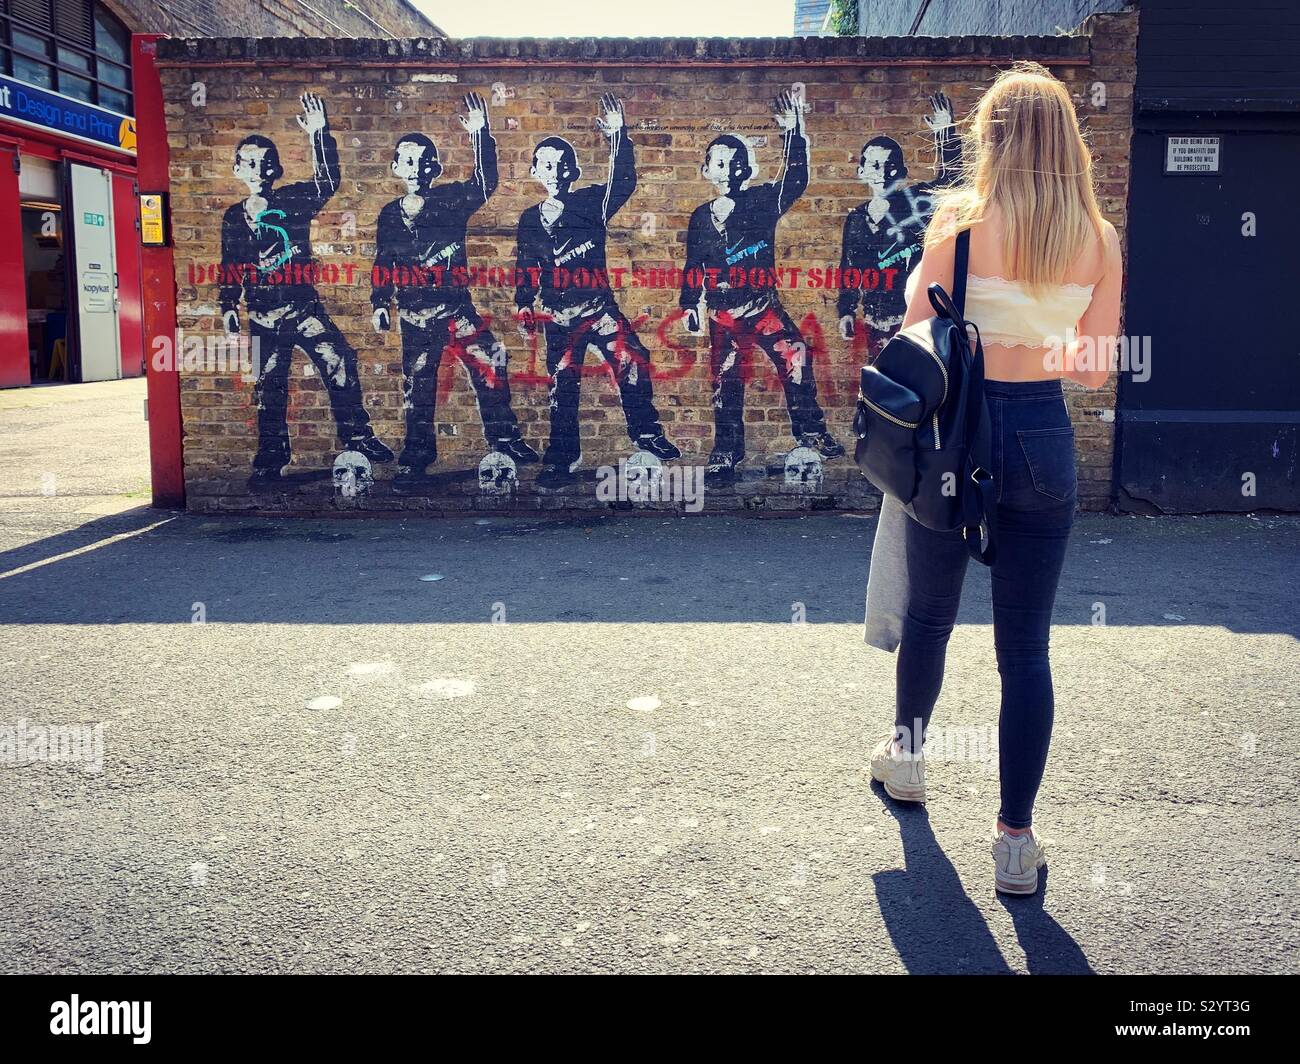 Bambi Graffiti, Shoreditch, London Stockfoto